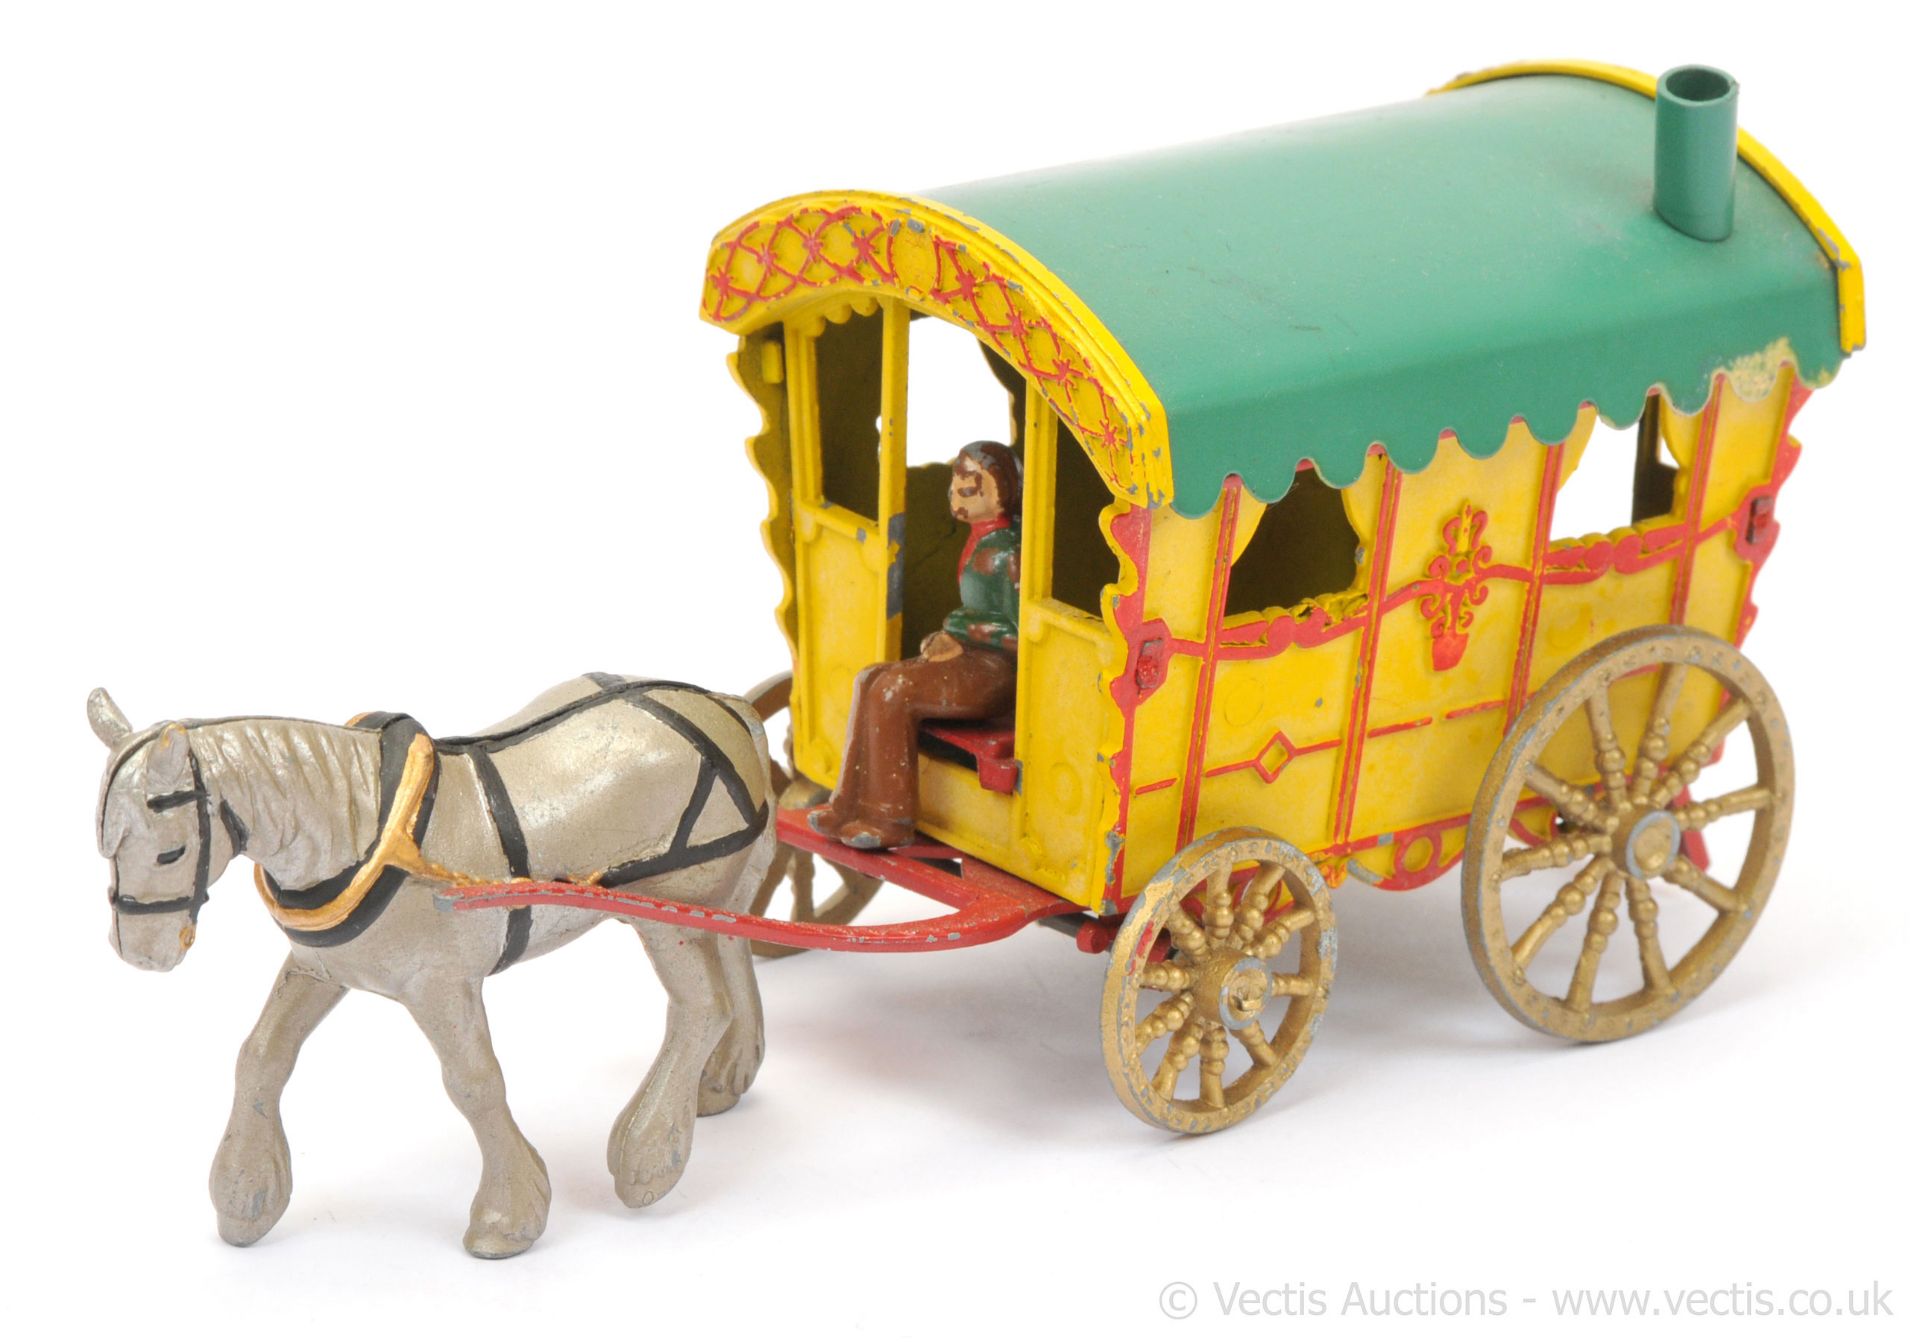 Morestone - Gypsy Caravan Set, Yellow Caravan